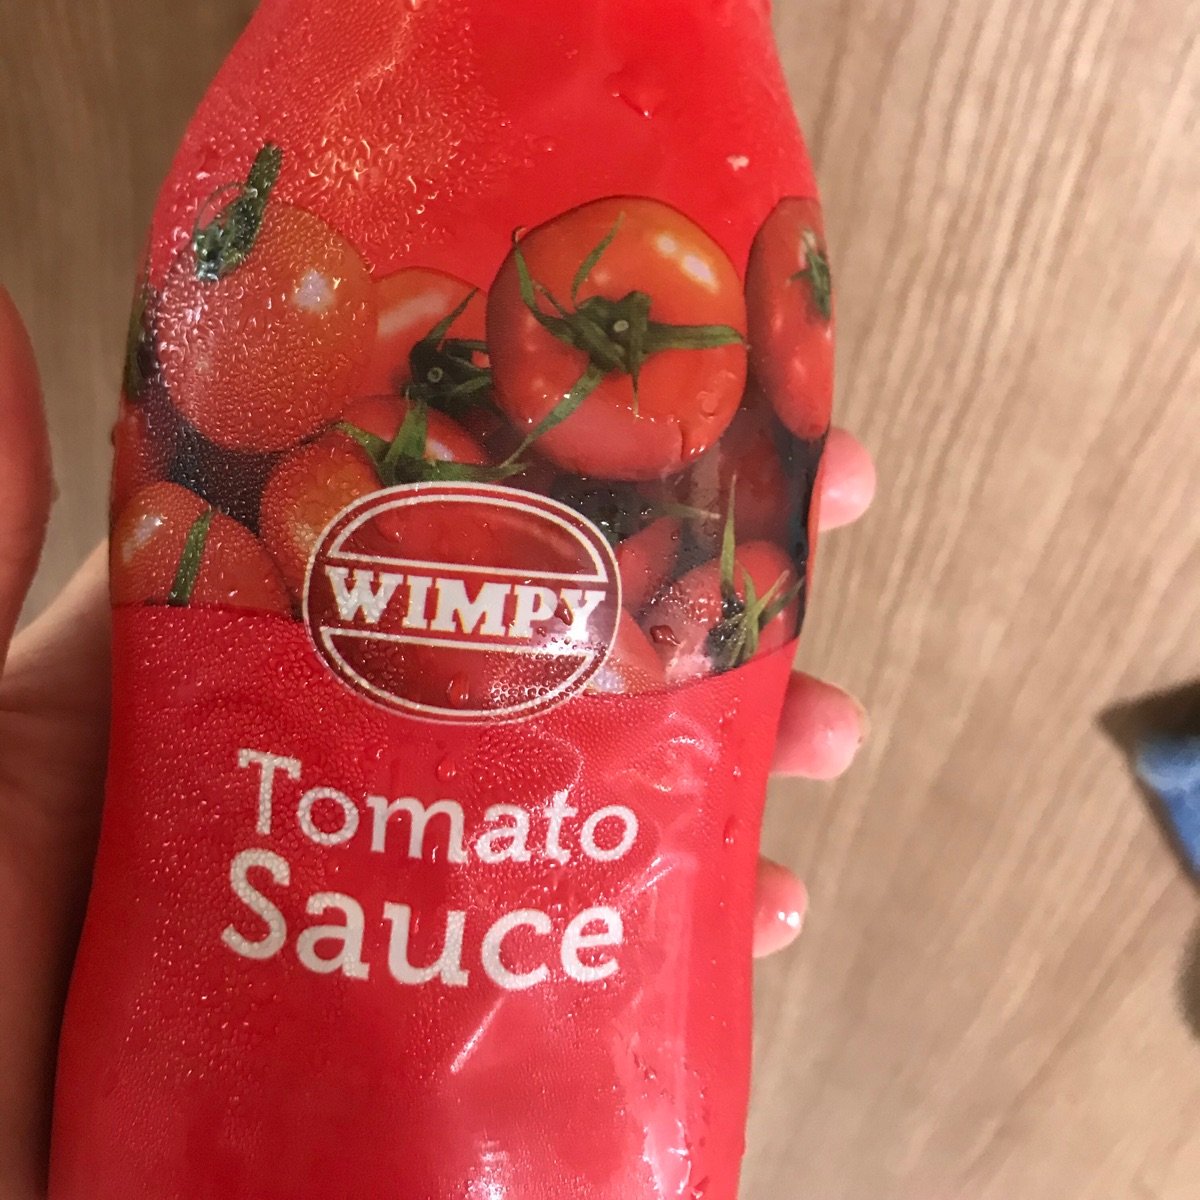 Wimpy Sauce